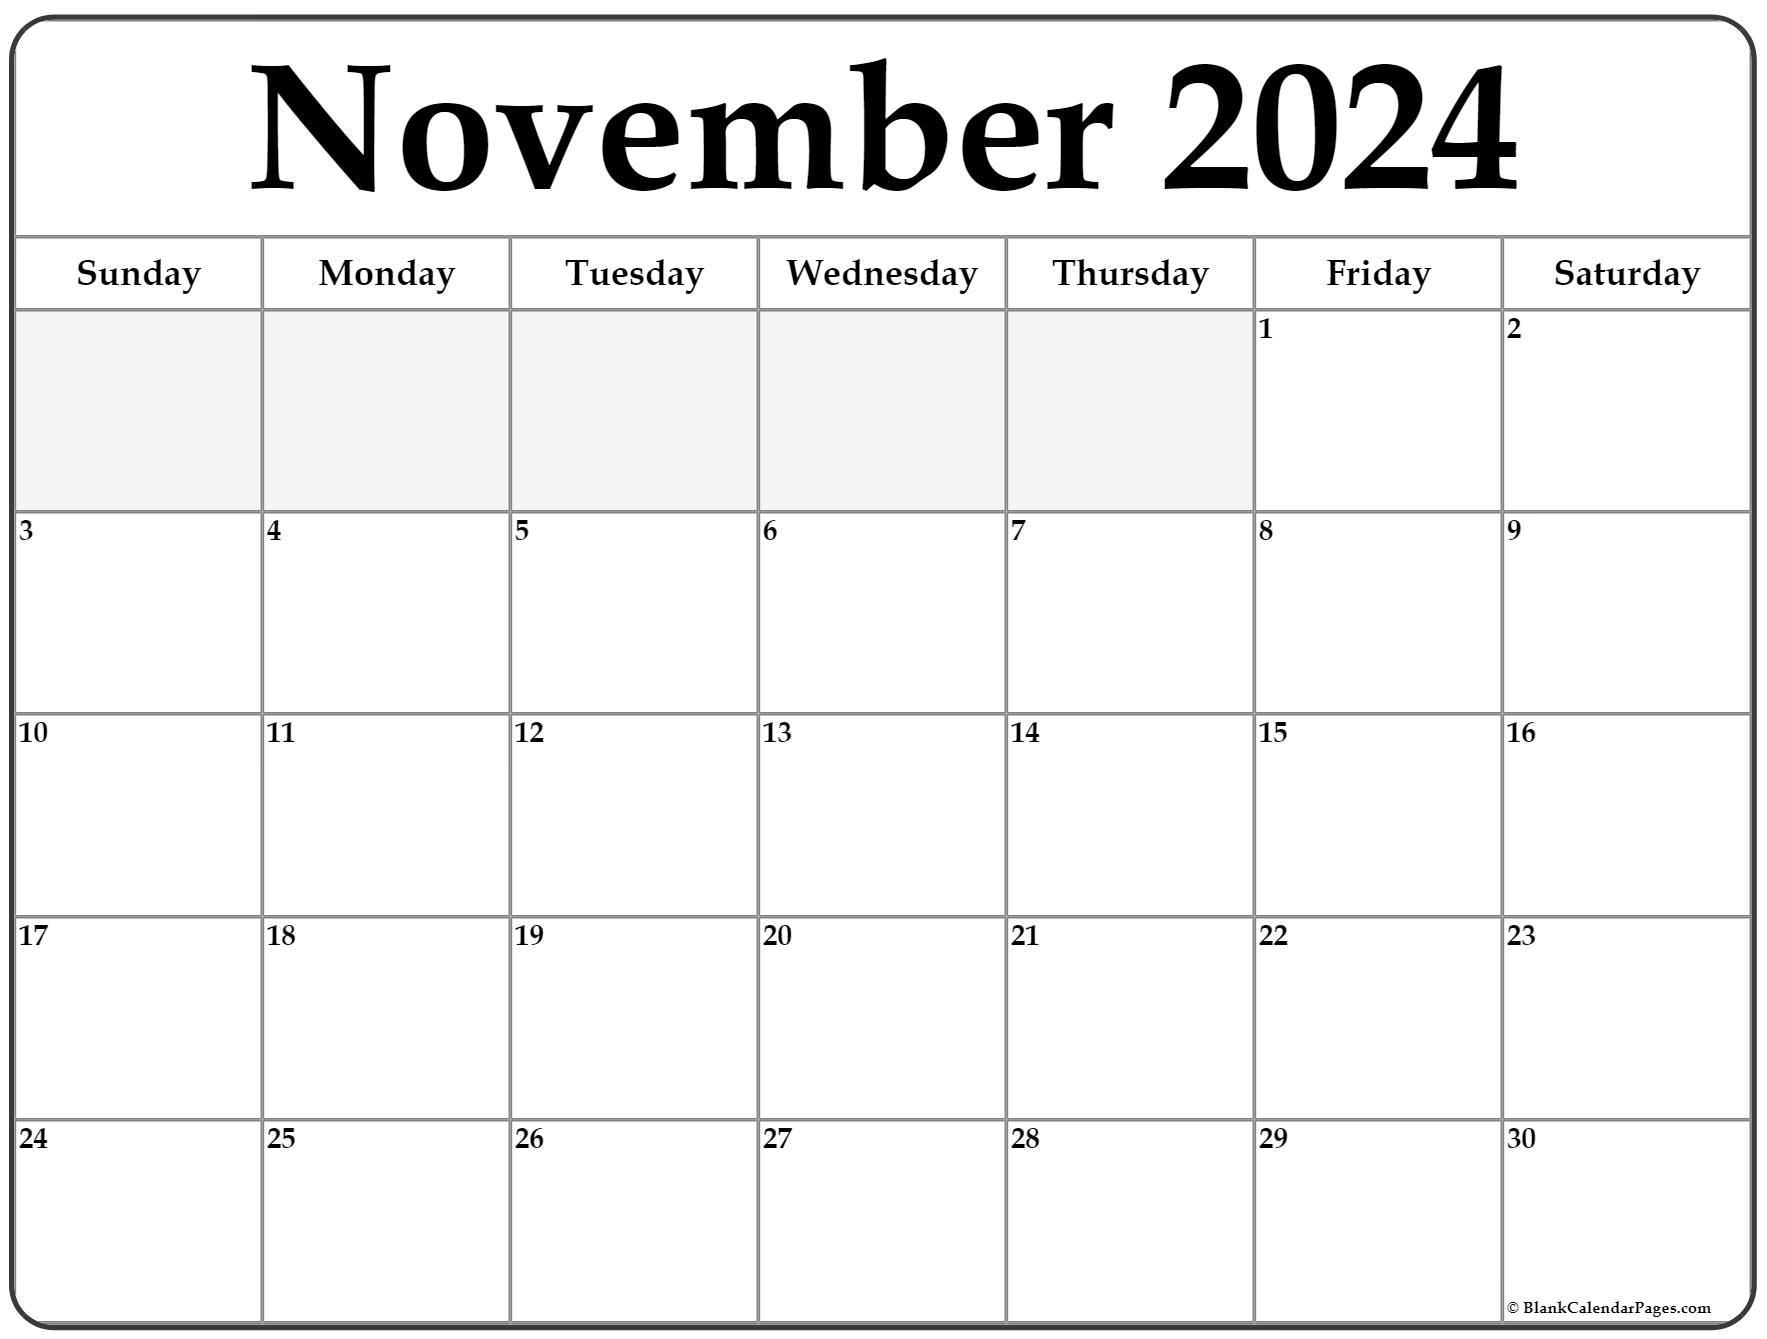 Printable 2022 November Calendar November 2022 Calendar | Free Printable Calendar Templates